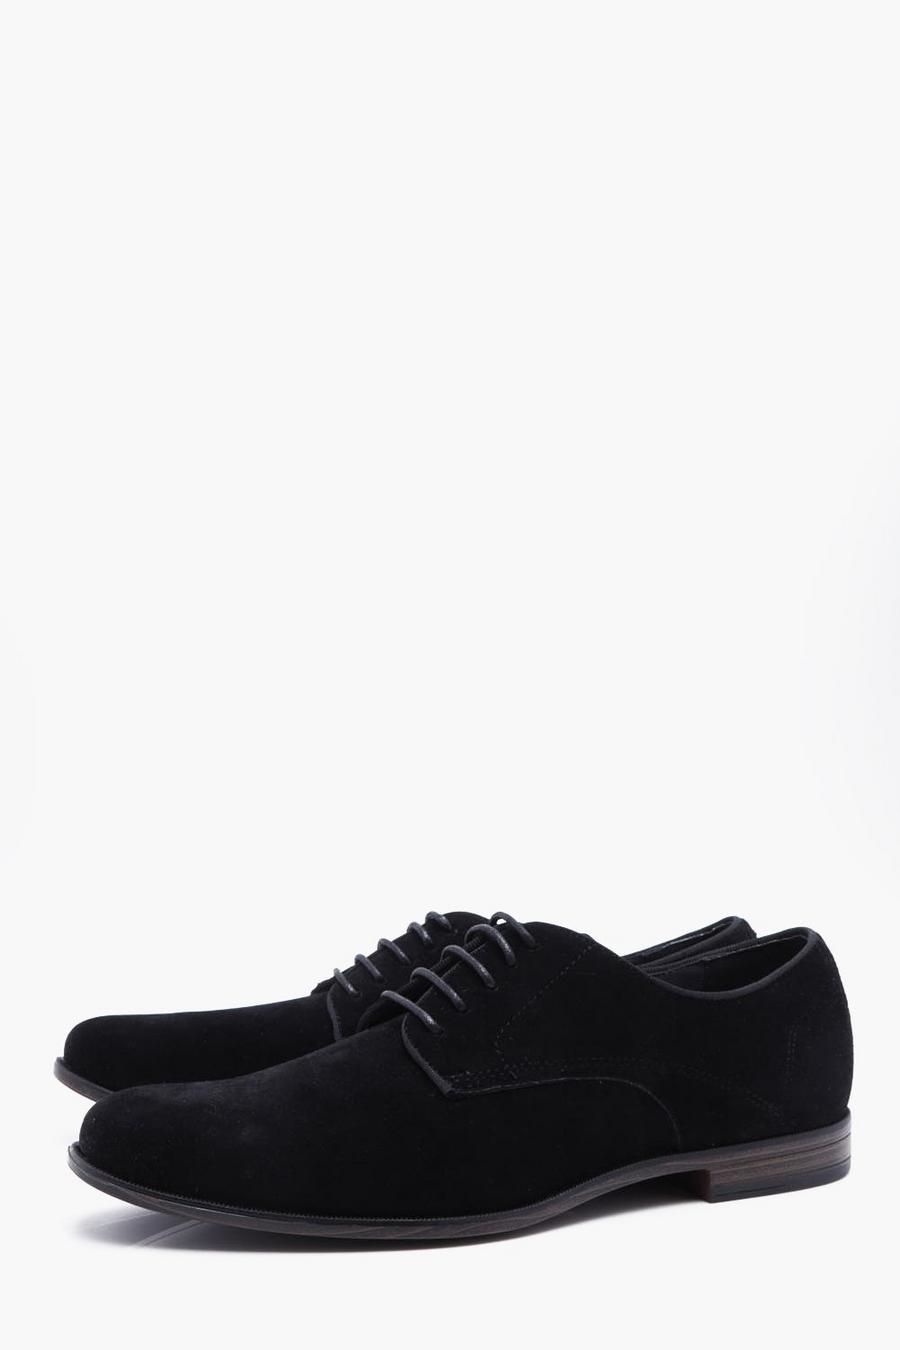 Chaussures style Derby en faux daim, Noir black